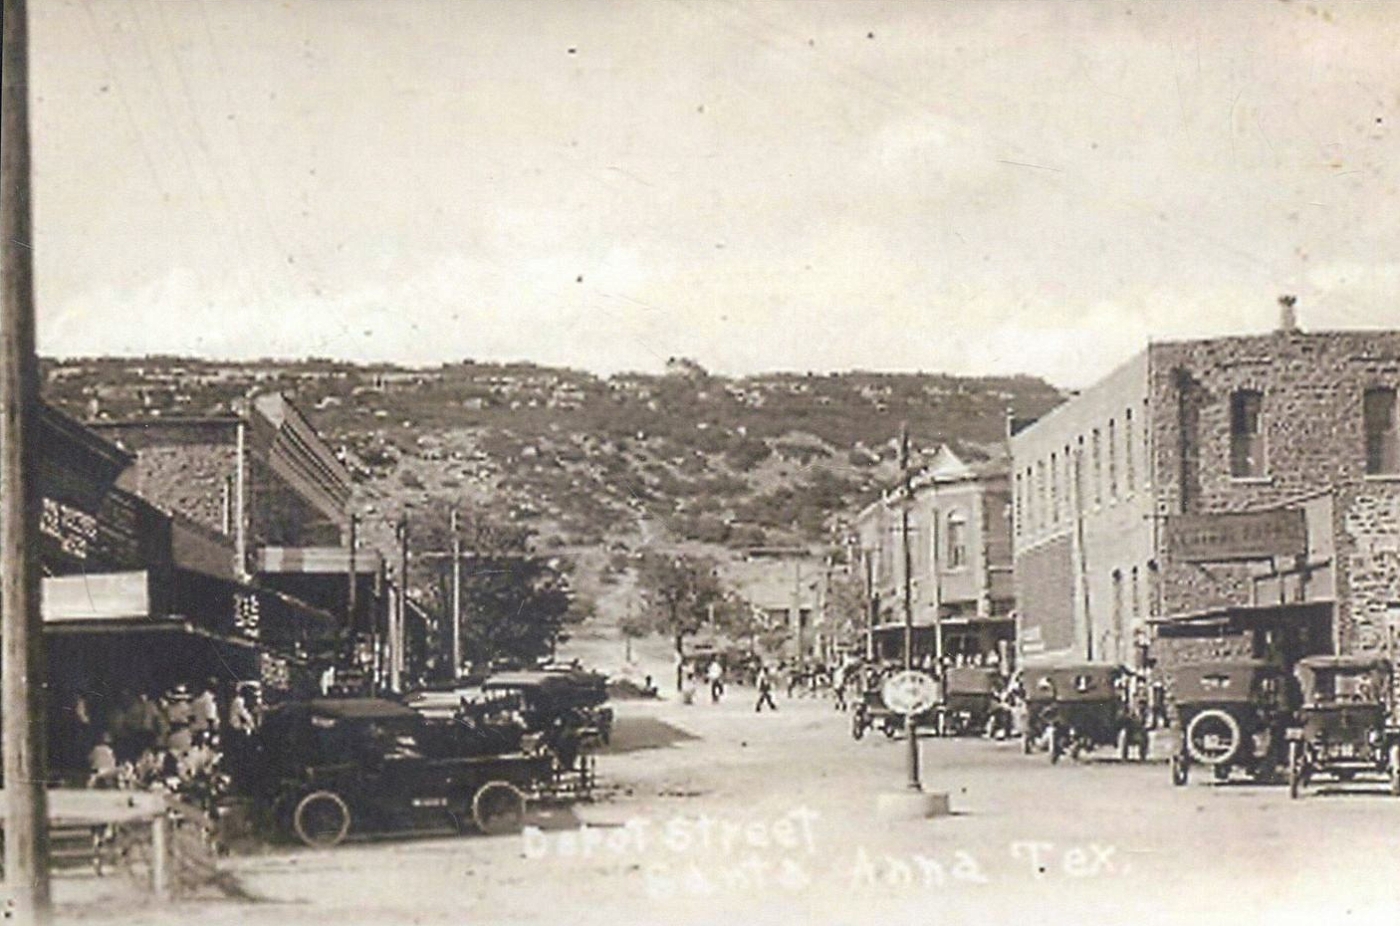 Depot Street in Santa Ana in 1910s